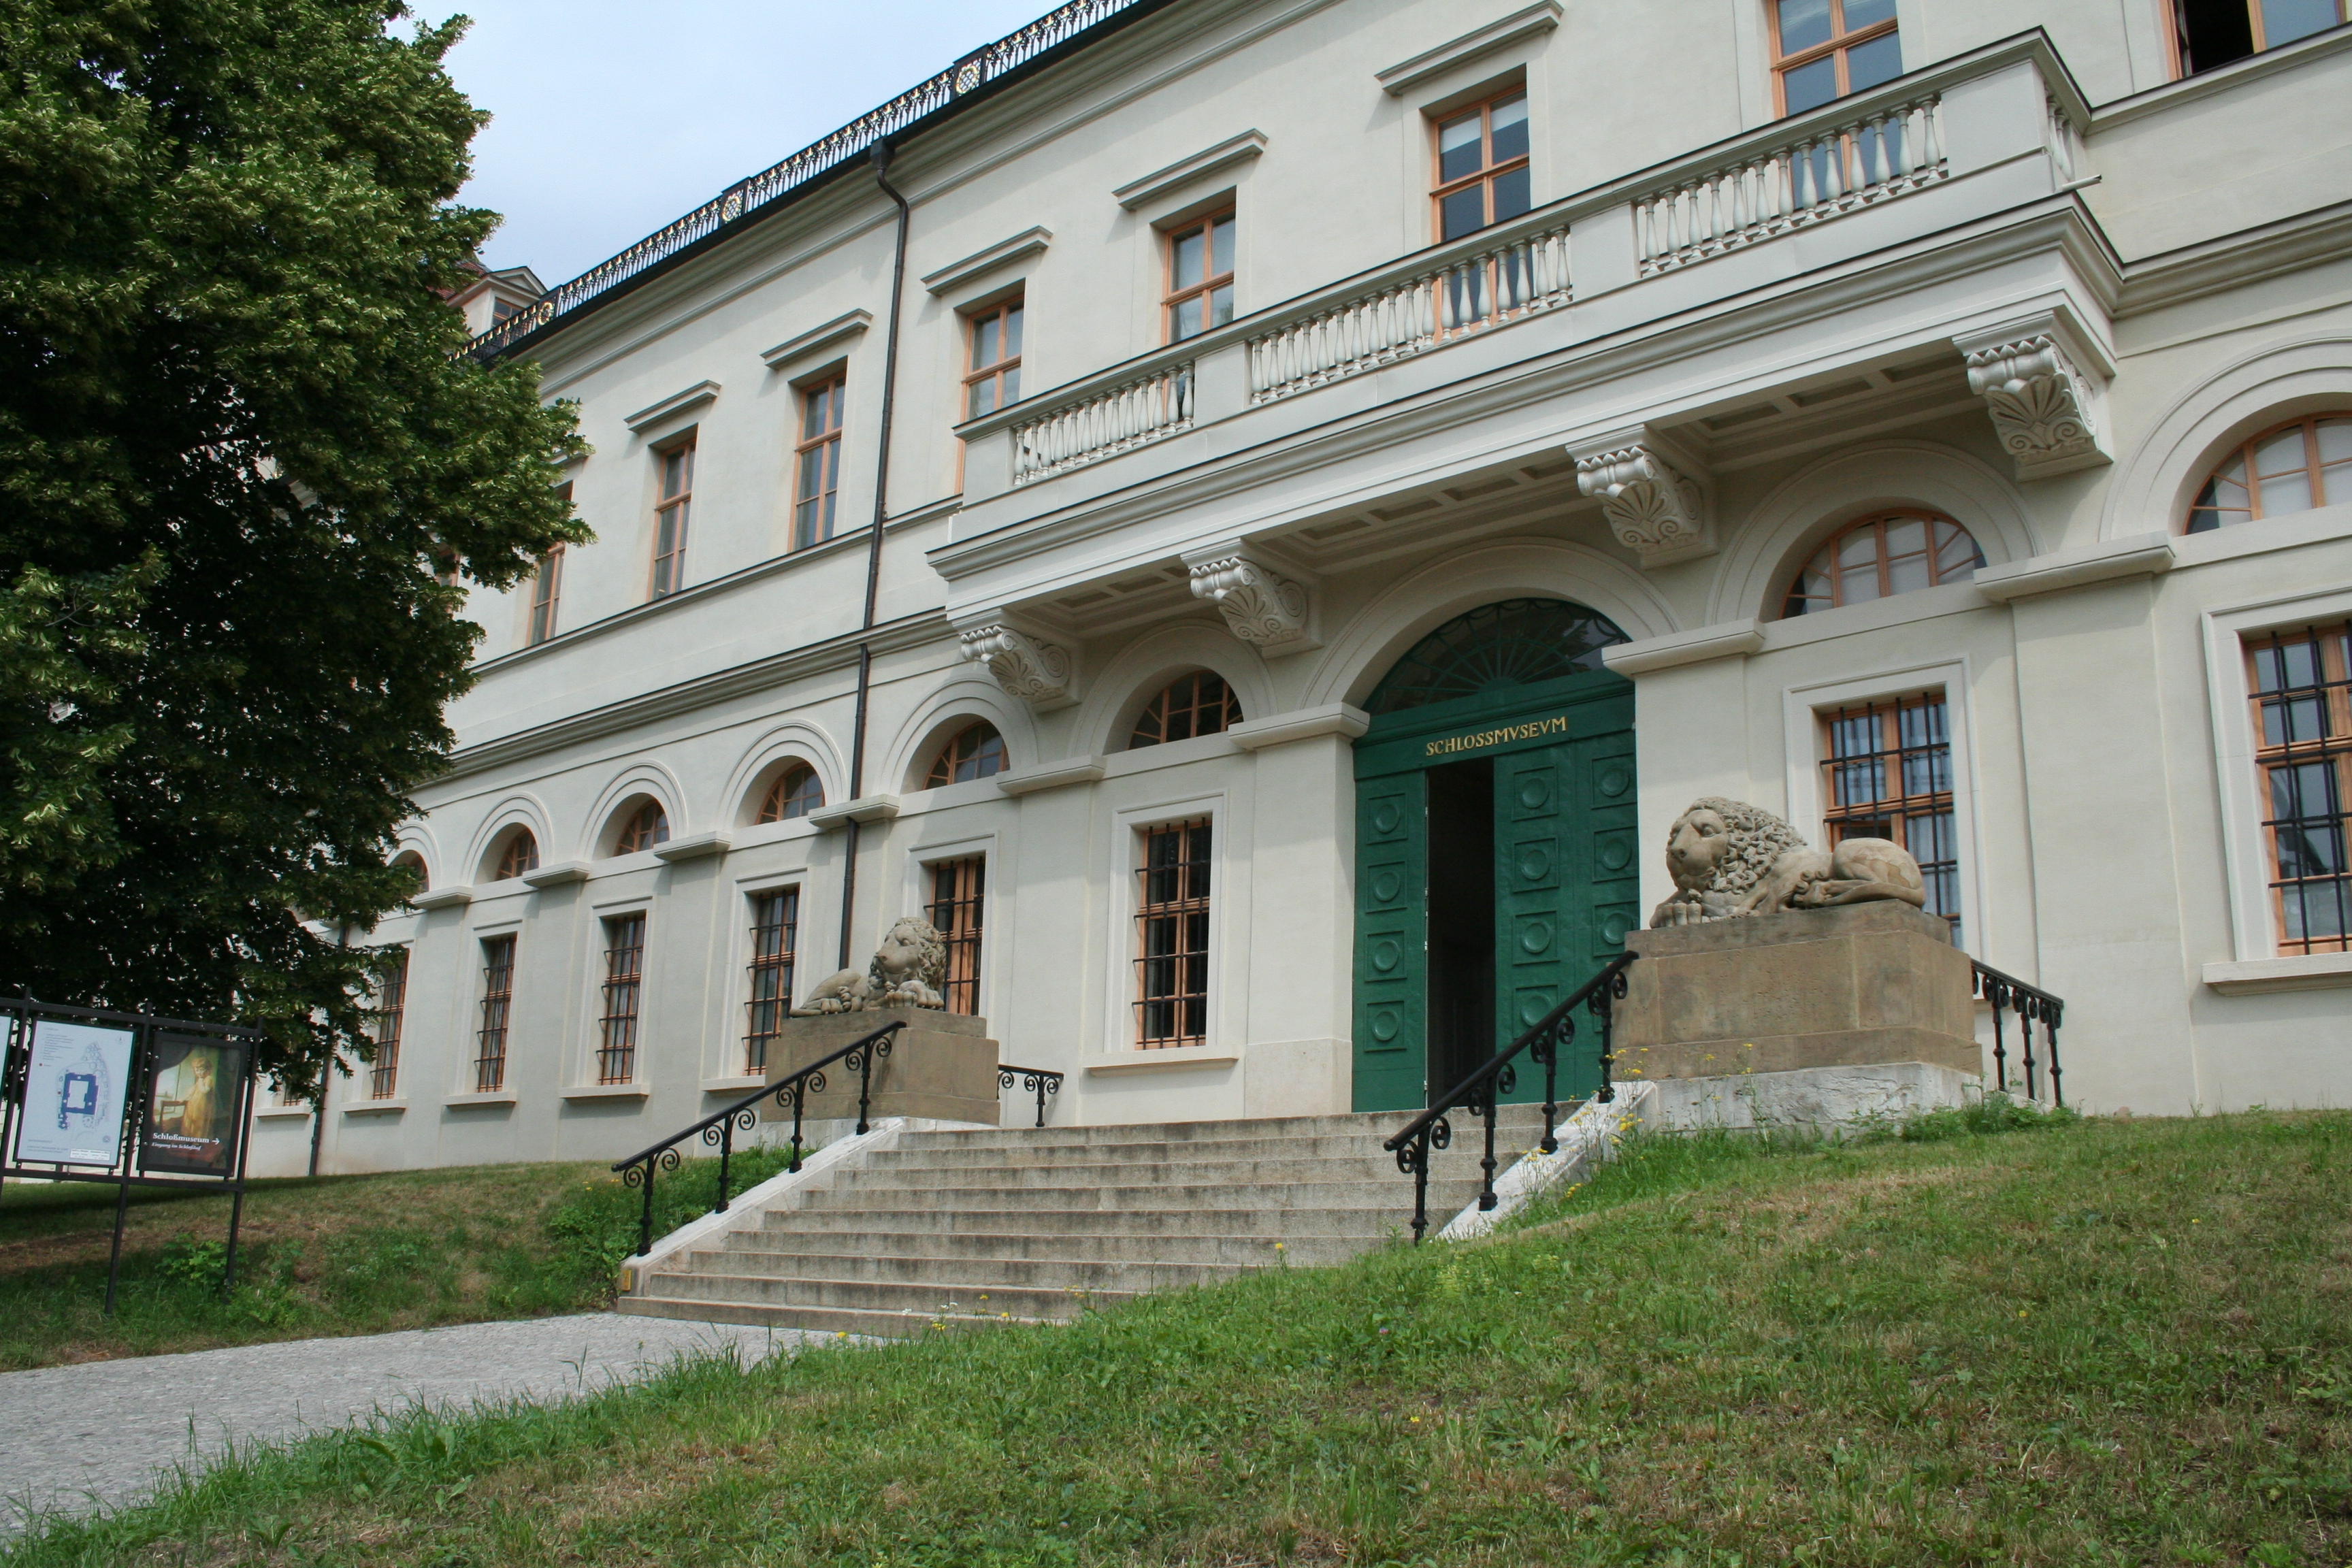 Bild 2 Schloßmuseum am Burgplatz in Weimar